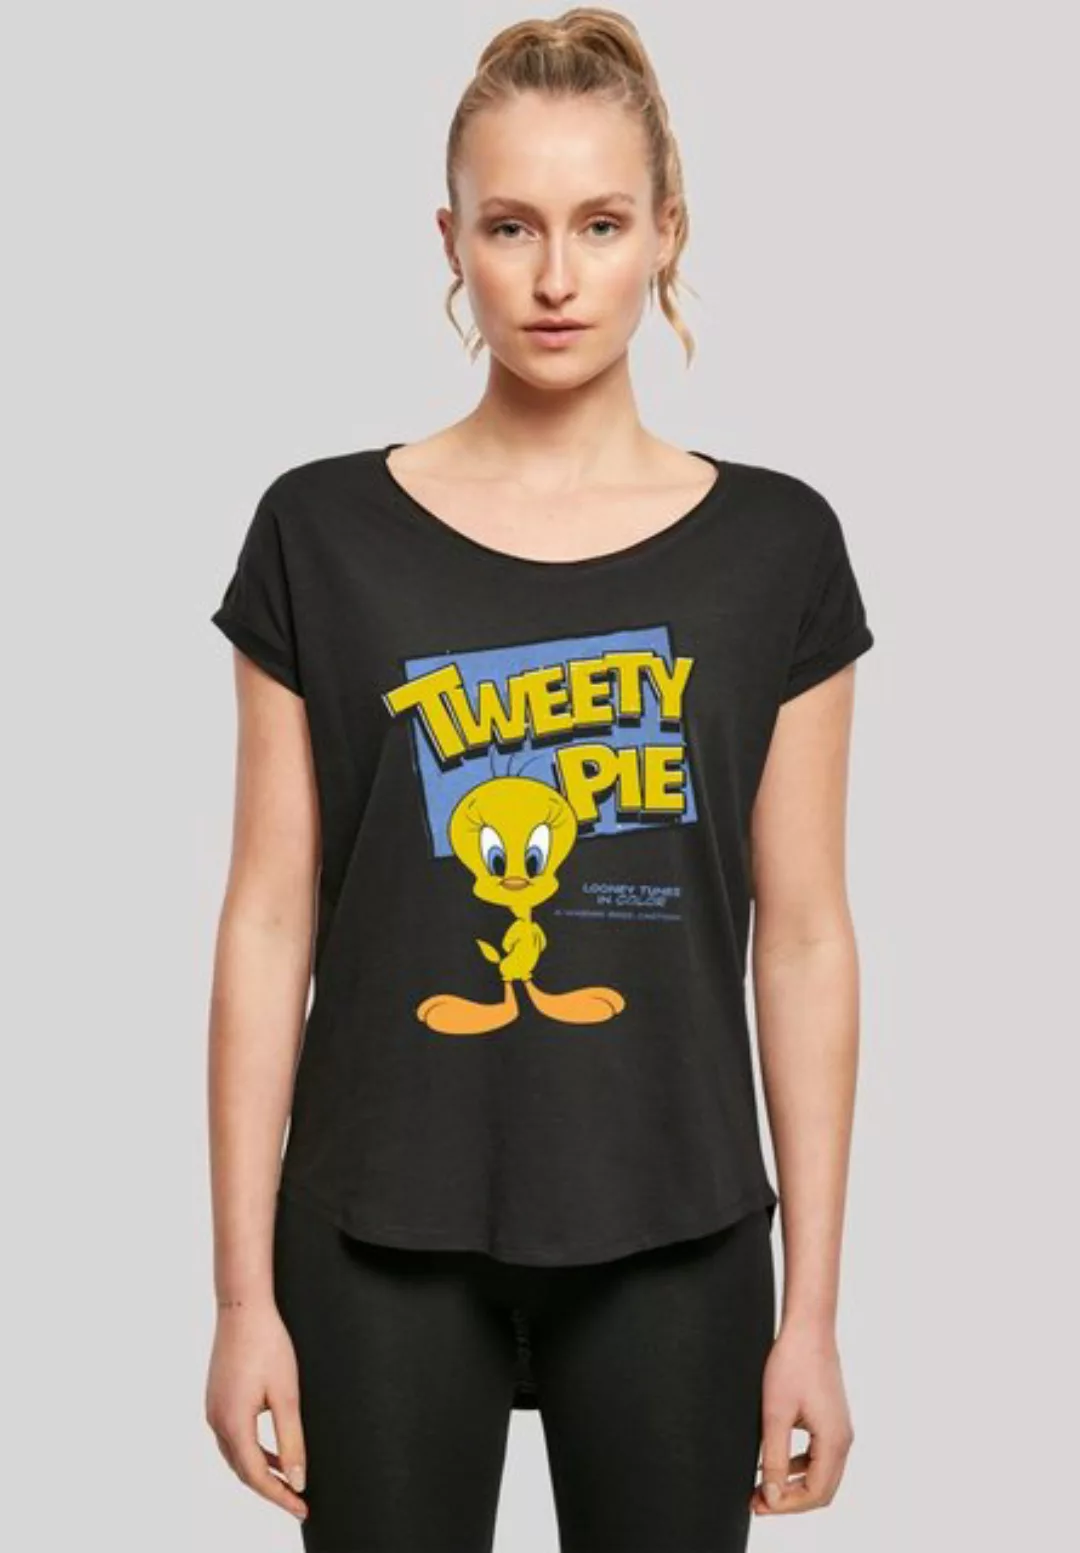 F4NT4STIC T-Shirt Looney Tunes Classic Tweety Pie Print günstig online kaufen